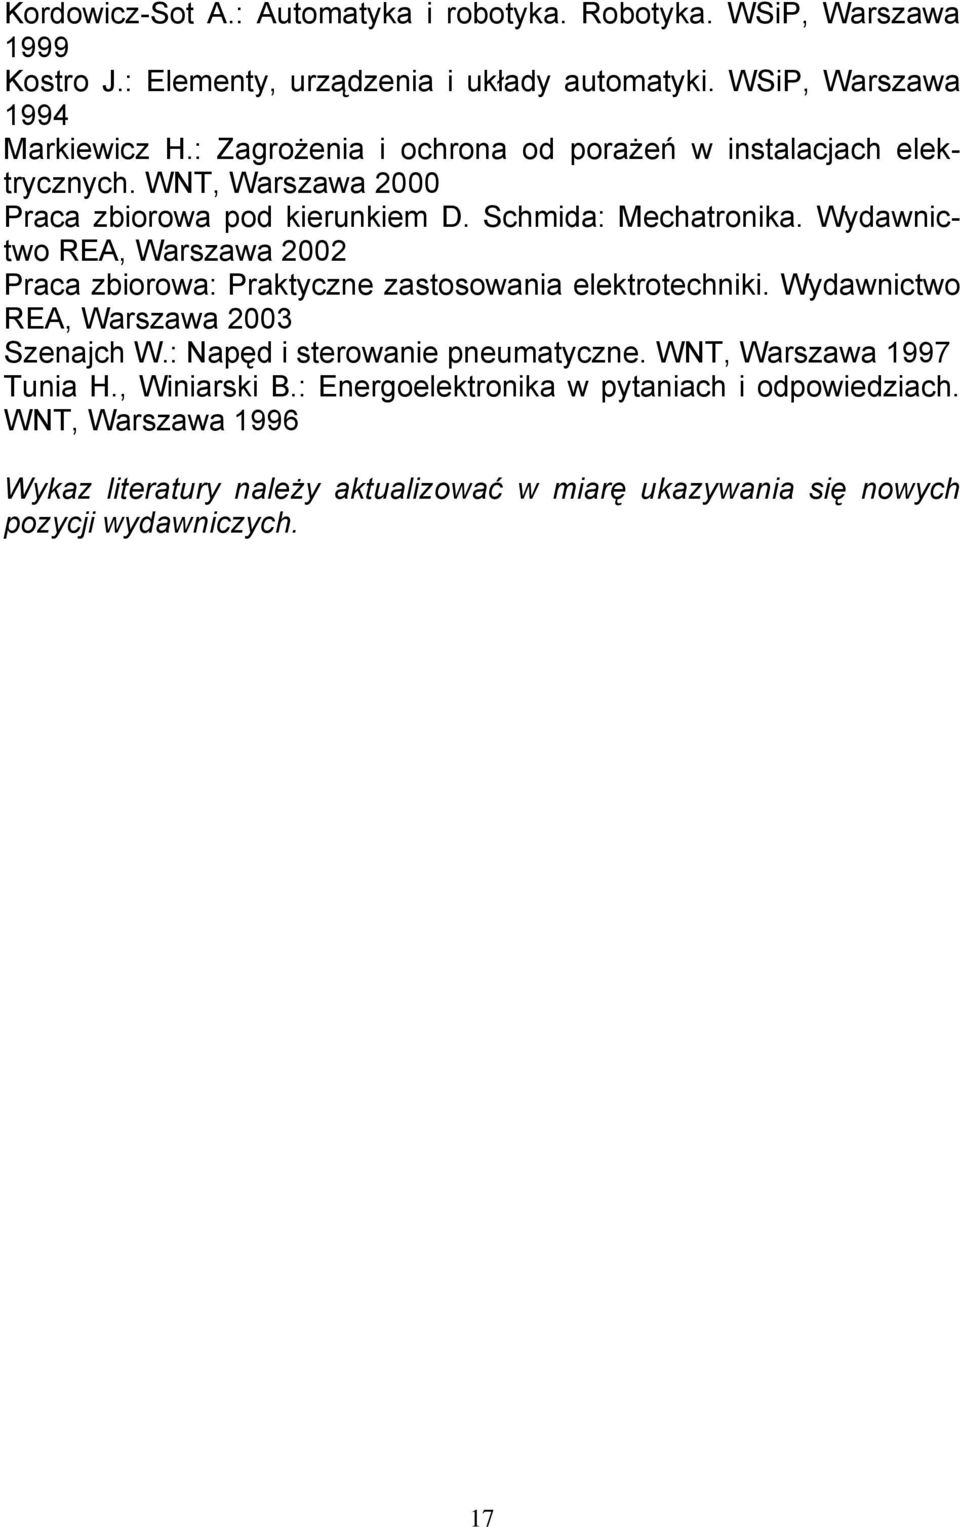 Wydawnictwo REA, Warszawa 2002 Praca zbiorowa: Praktyczne zastosowania elektrotechniki. Wydawnictwo REA, Warszawa 2003 Szenajch W.: Napęd i sterowanie pneumatyczne.